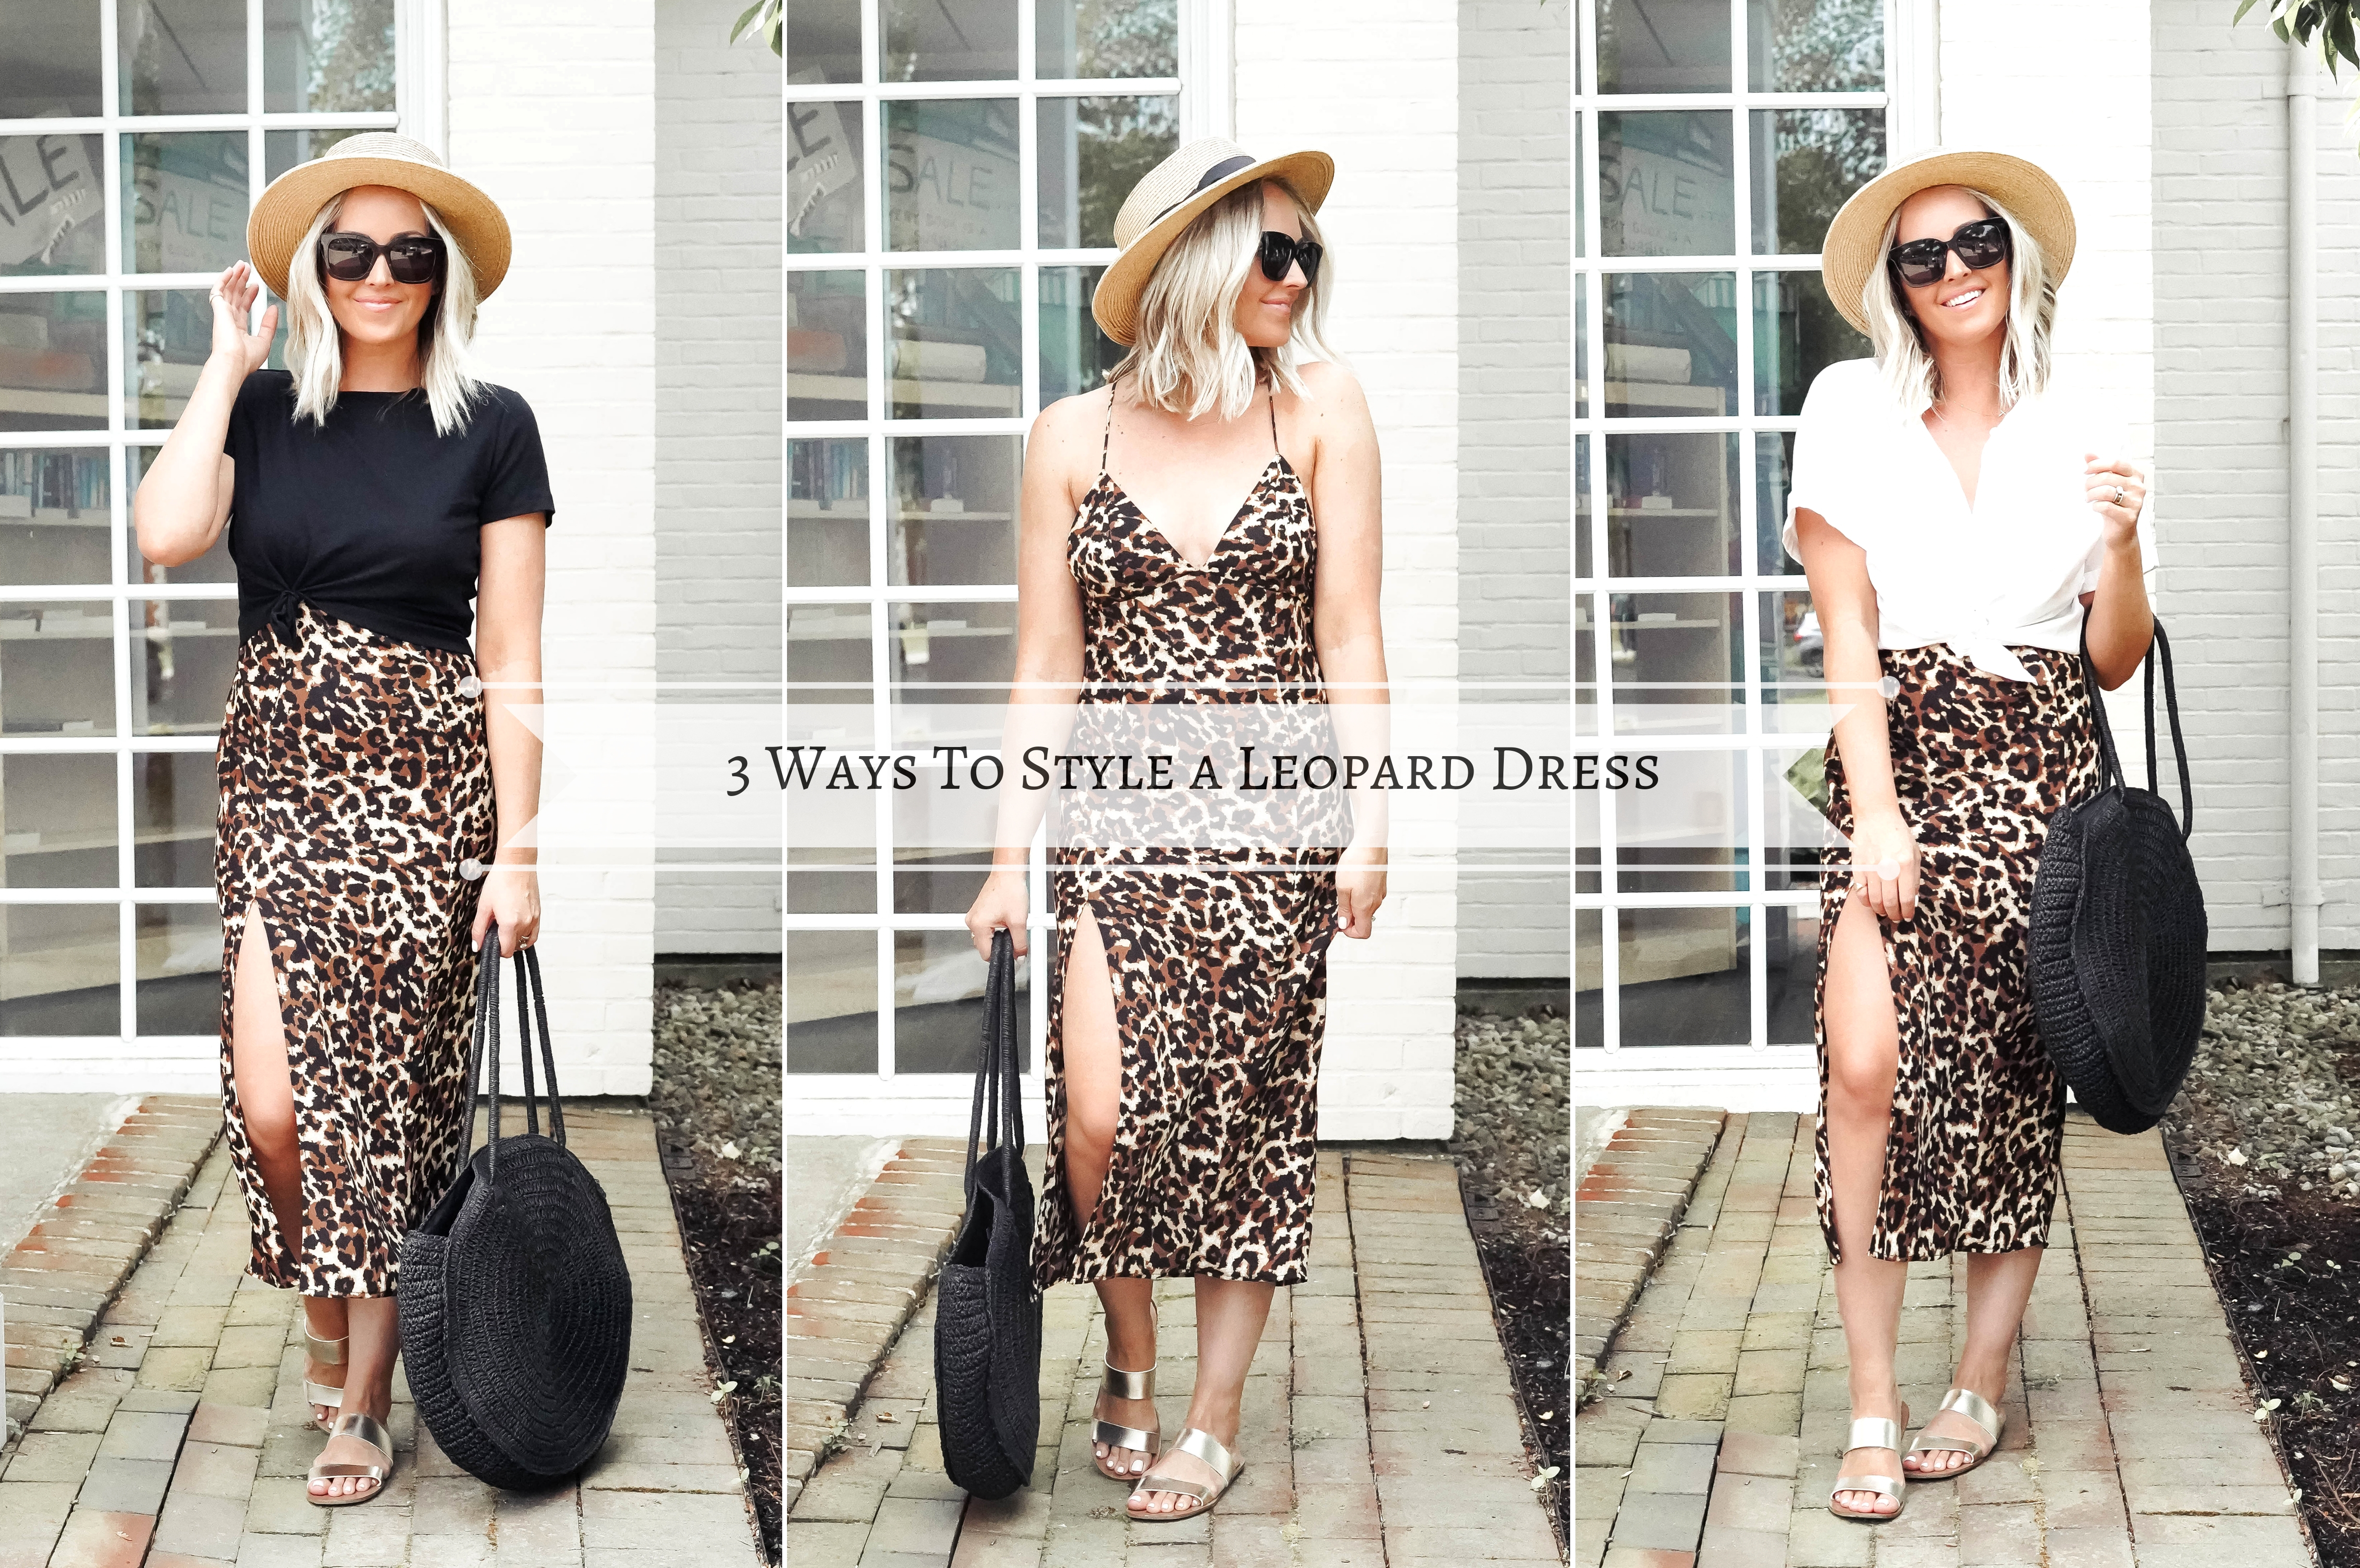 How to Wear a Leopard Dress